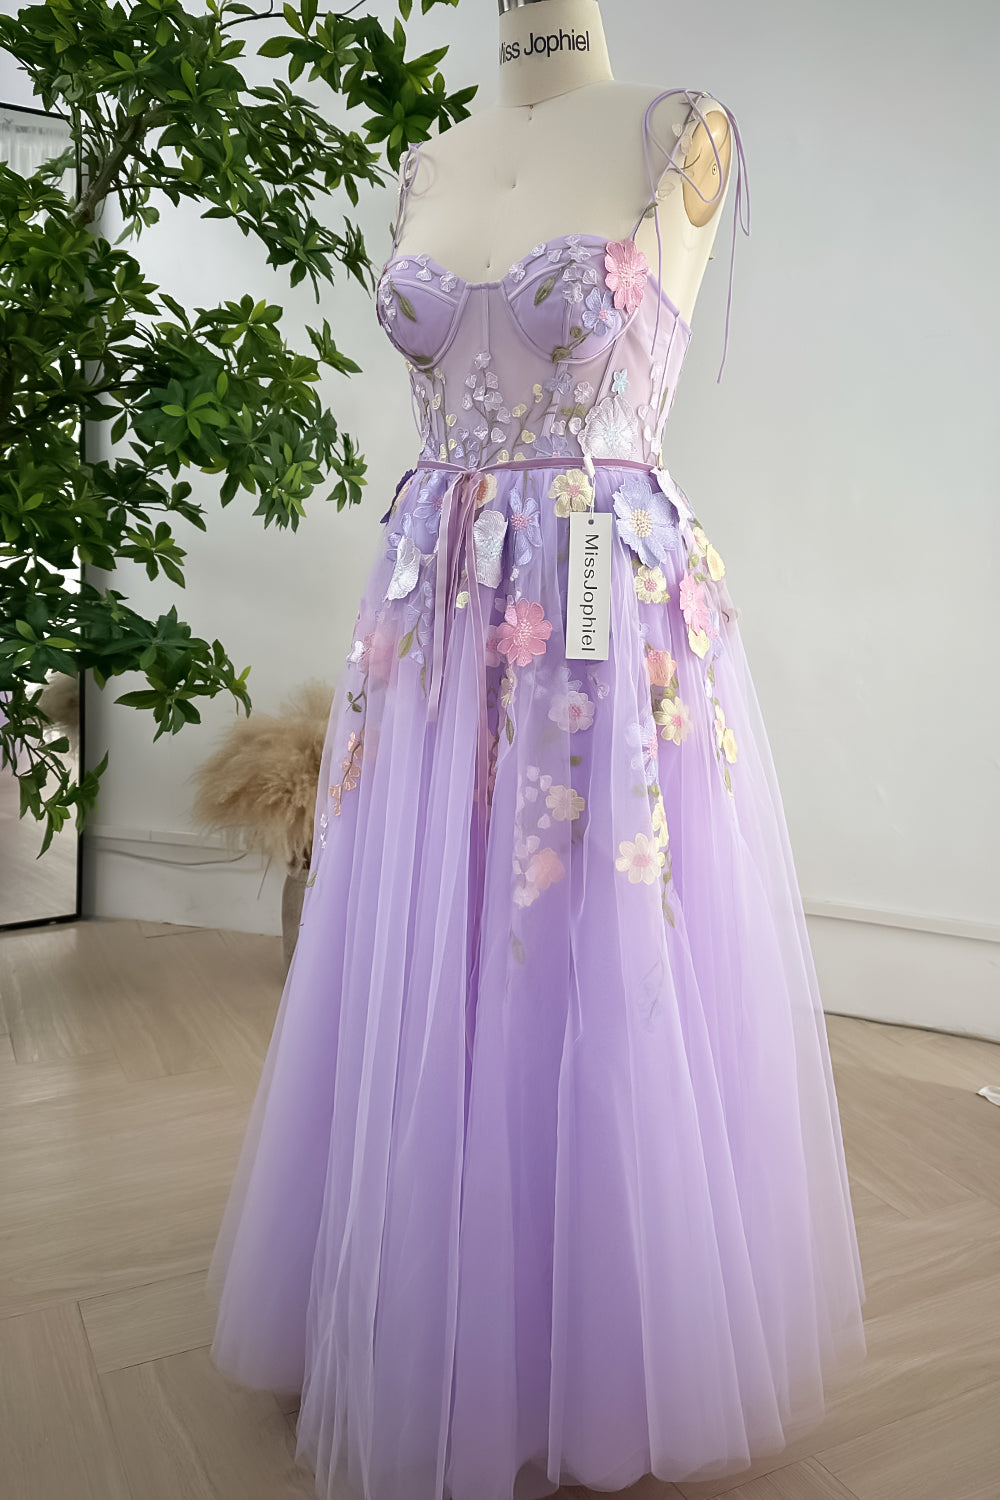 MissJophiel Embroidery Floral Corset Lavender Dress with Removable Tie Straps